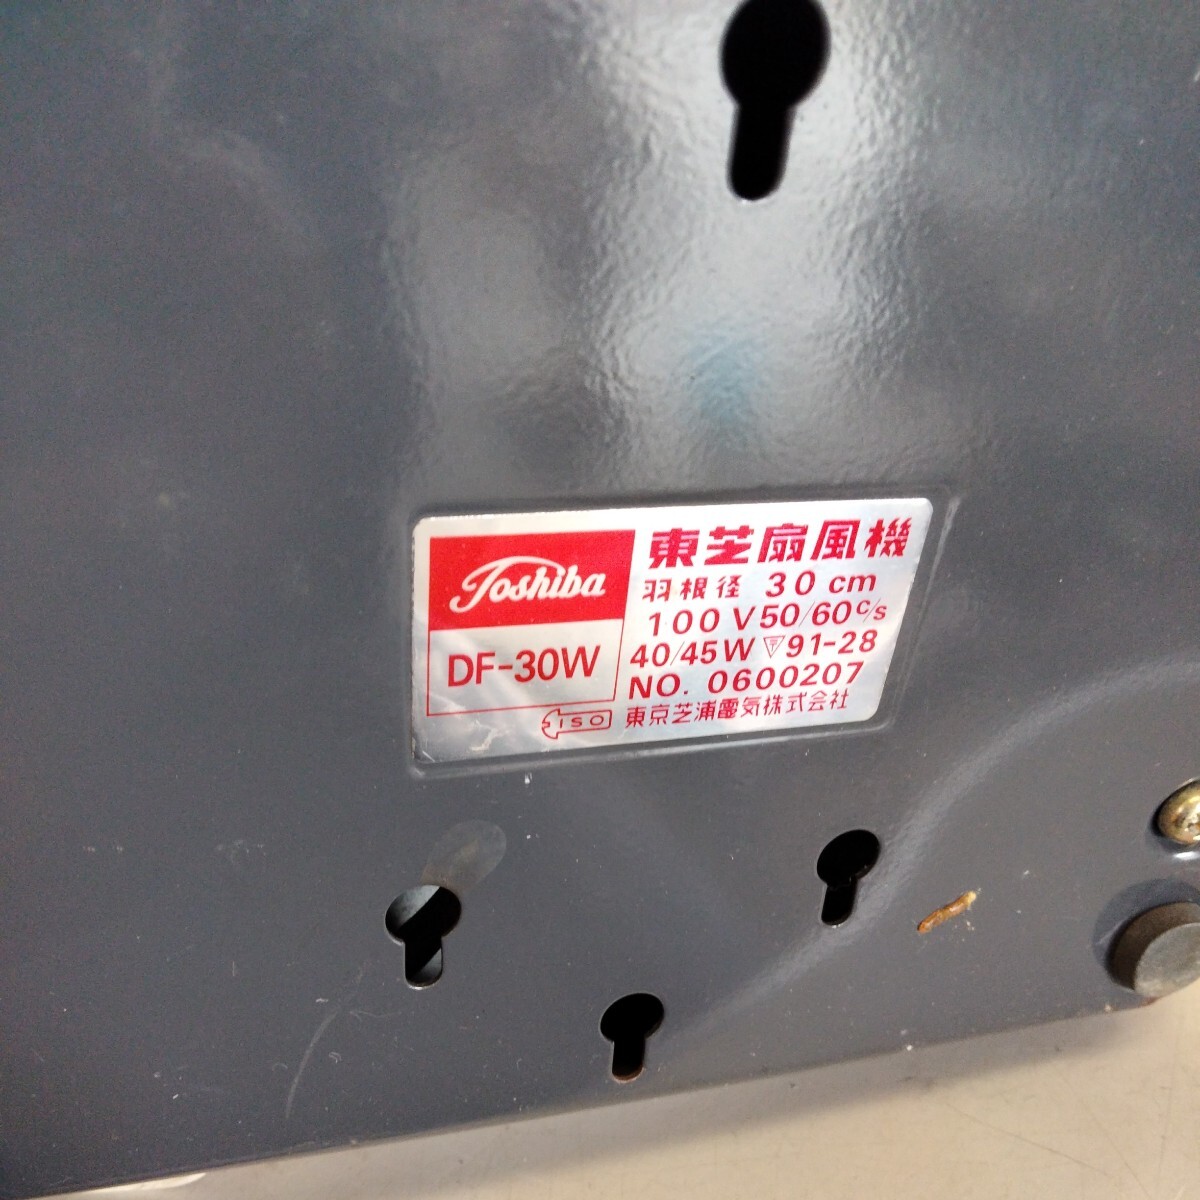  Toshiba TOSHIBA вентилятор CRYSTAL ZEPHYR DF-30W 30cm 4 крыльев античный Showa Retro подлинная вещь подтверждение рабочего состояния текущее состояние товар 